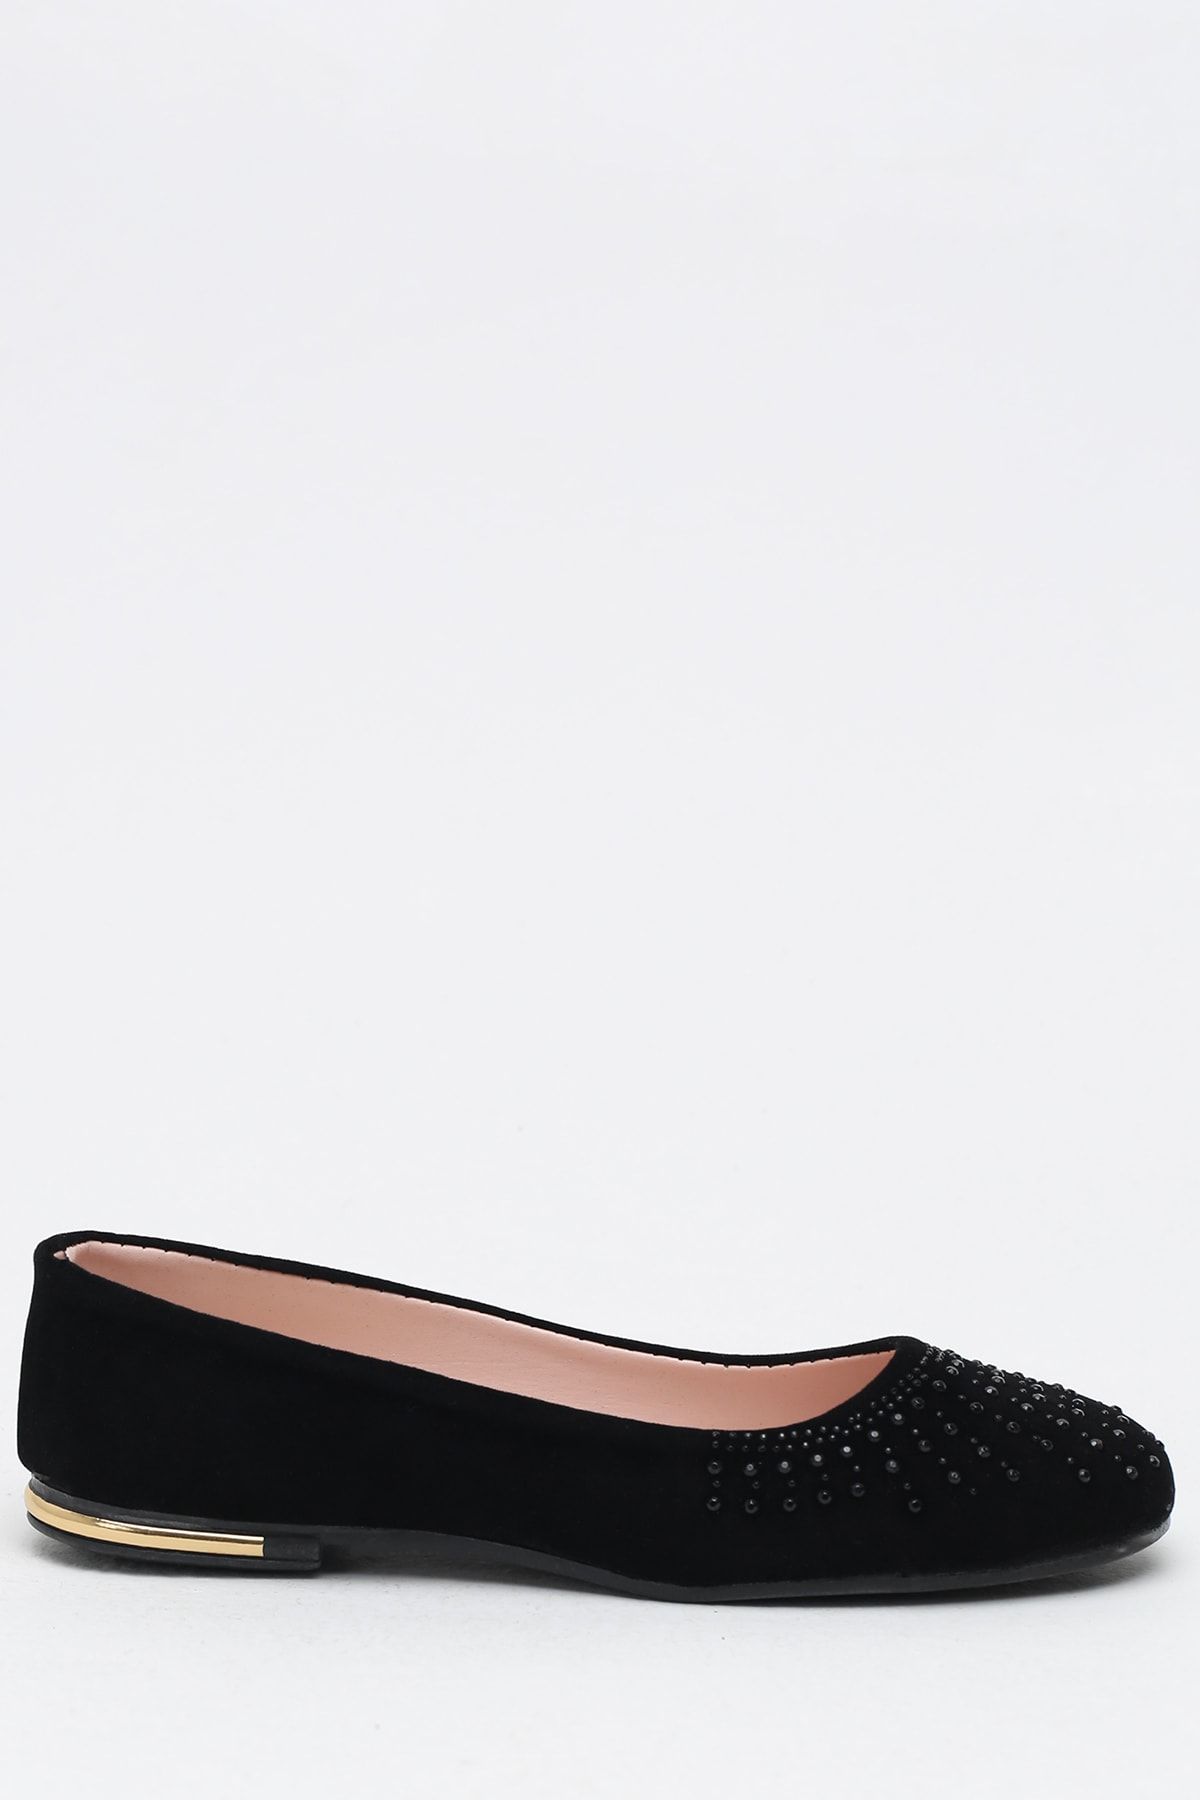 Ayakkabı Modası Siyah Kadın Babet 9999-19-100025